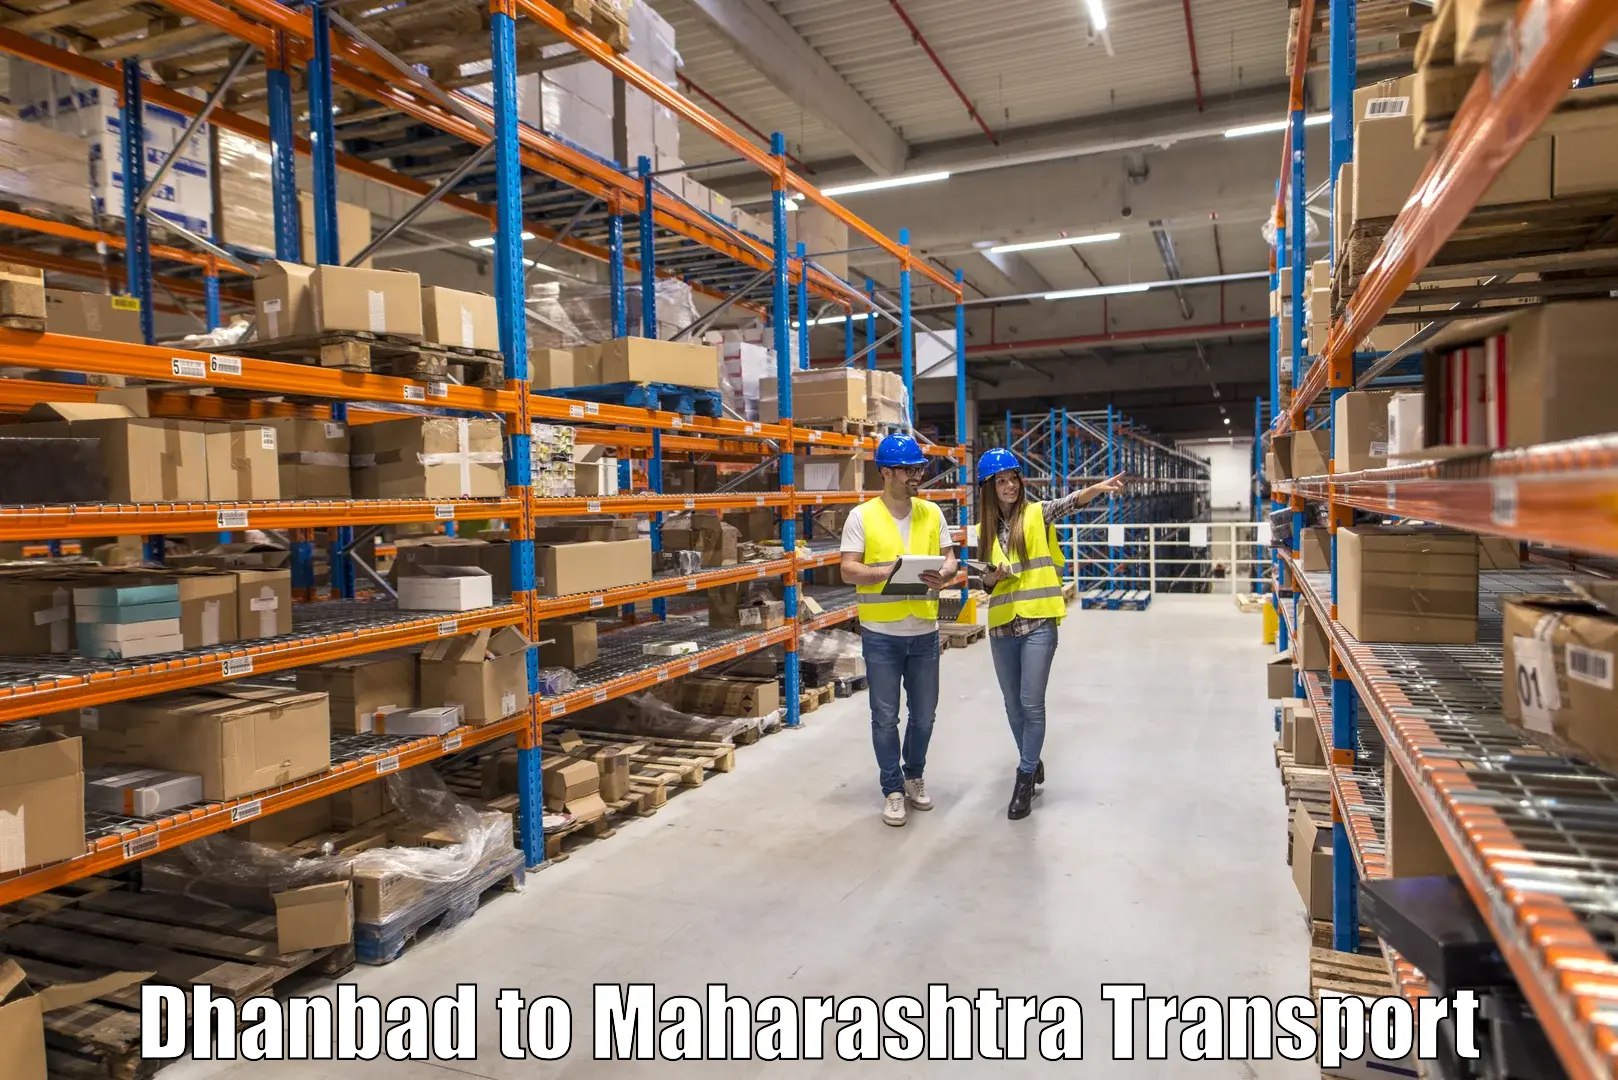 Transportation solution services Dhanbad to Gadhinglaj